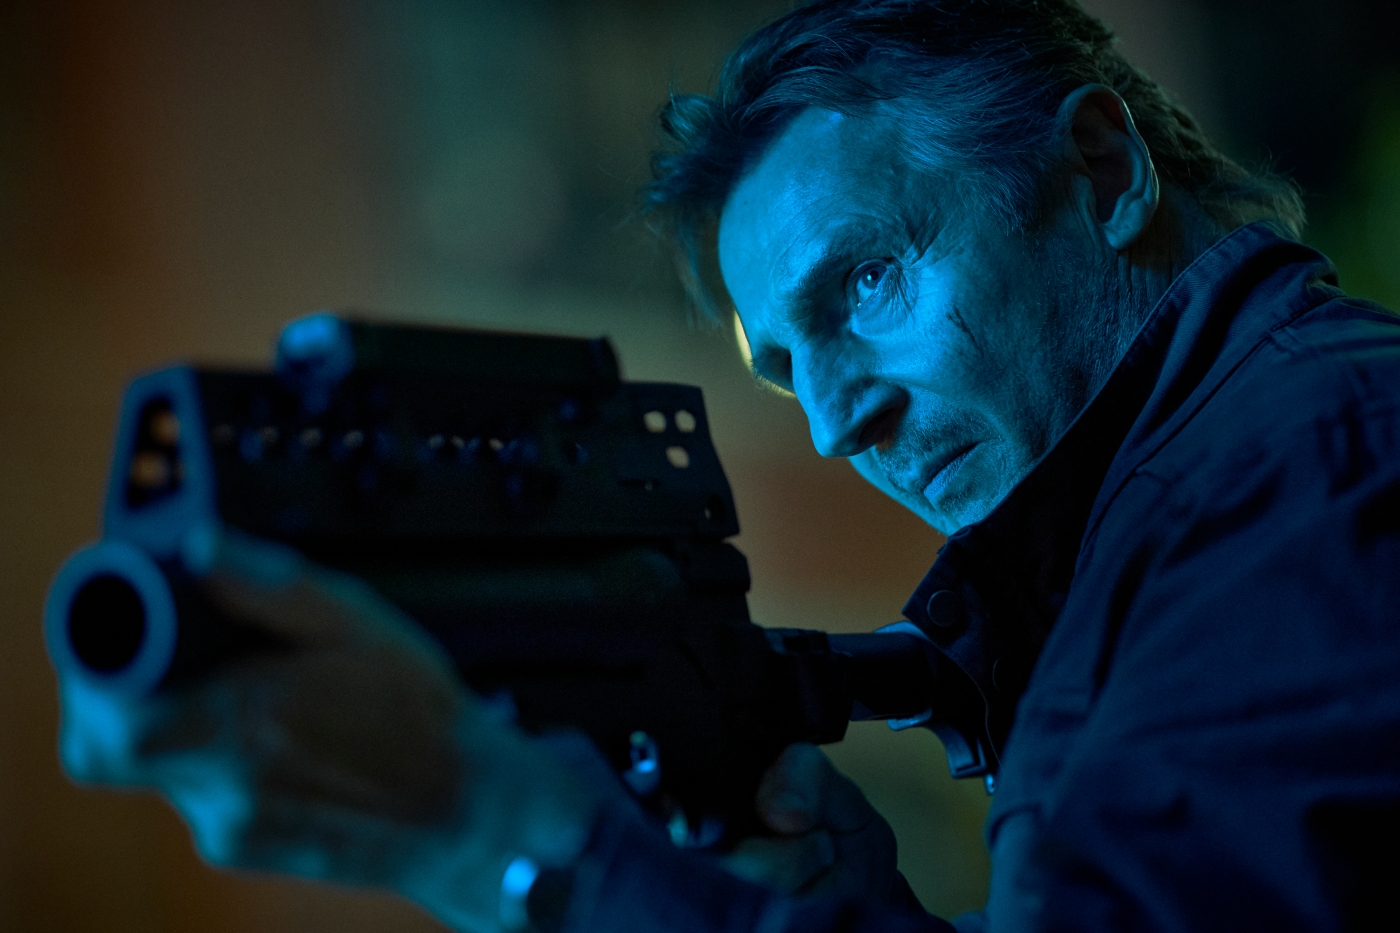 Handelt auf Befehl: Travis Block (Liam Neeson) ist Problemlöser beim FBI und stets zur Stelle, wenn es brenzlig wird